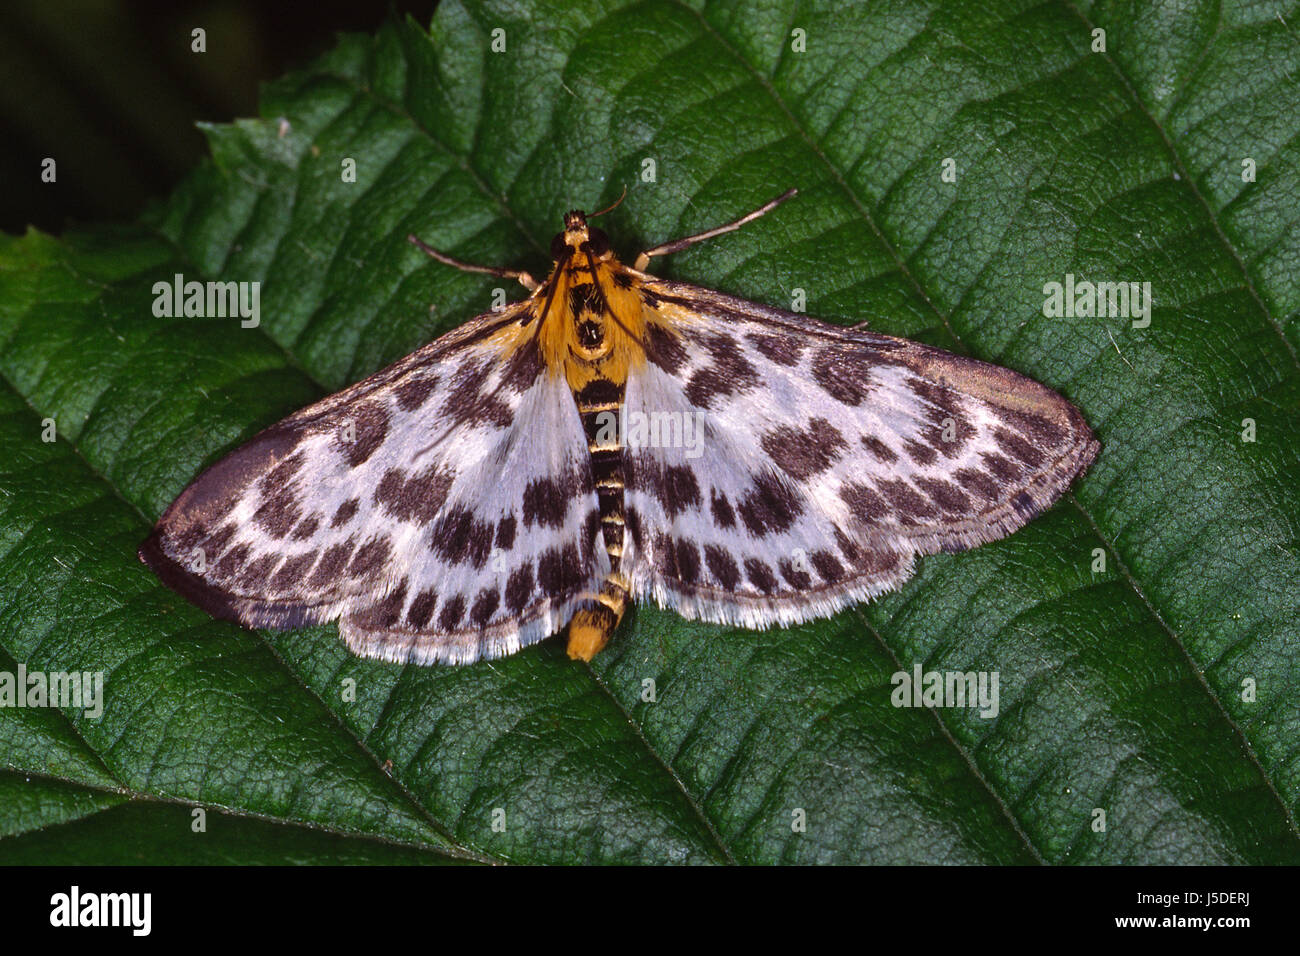 butterfly butterflies moths eurrhypara hortulata eurrhypara urticae Stock Photo